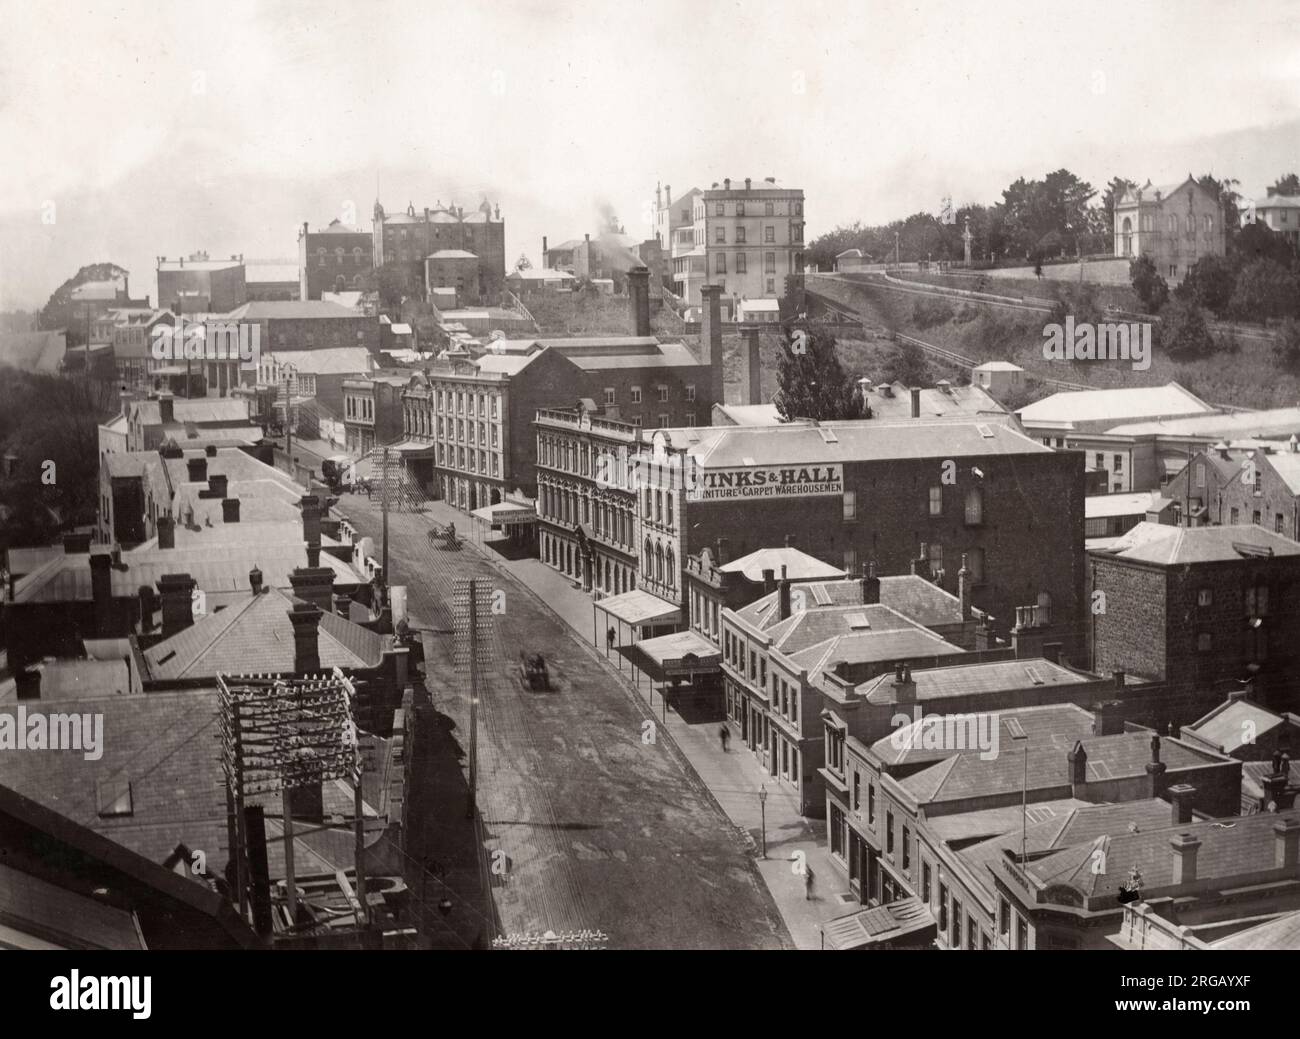 Fotografia d'epoca del 19 ° secolo - scena di strada ad Auckland Nuova Zelanda, include i locali dei produttori di mobili Winks e Hall. Foto Stock